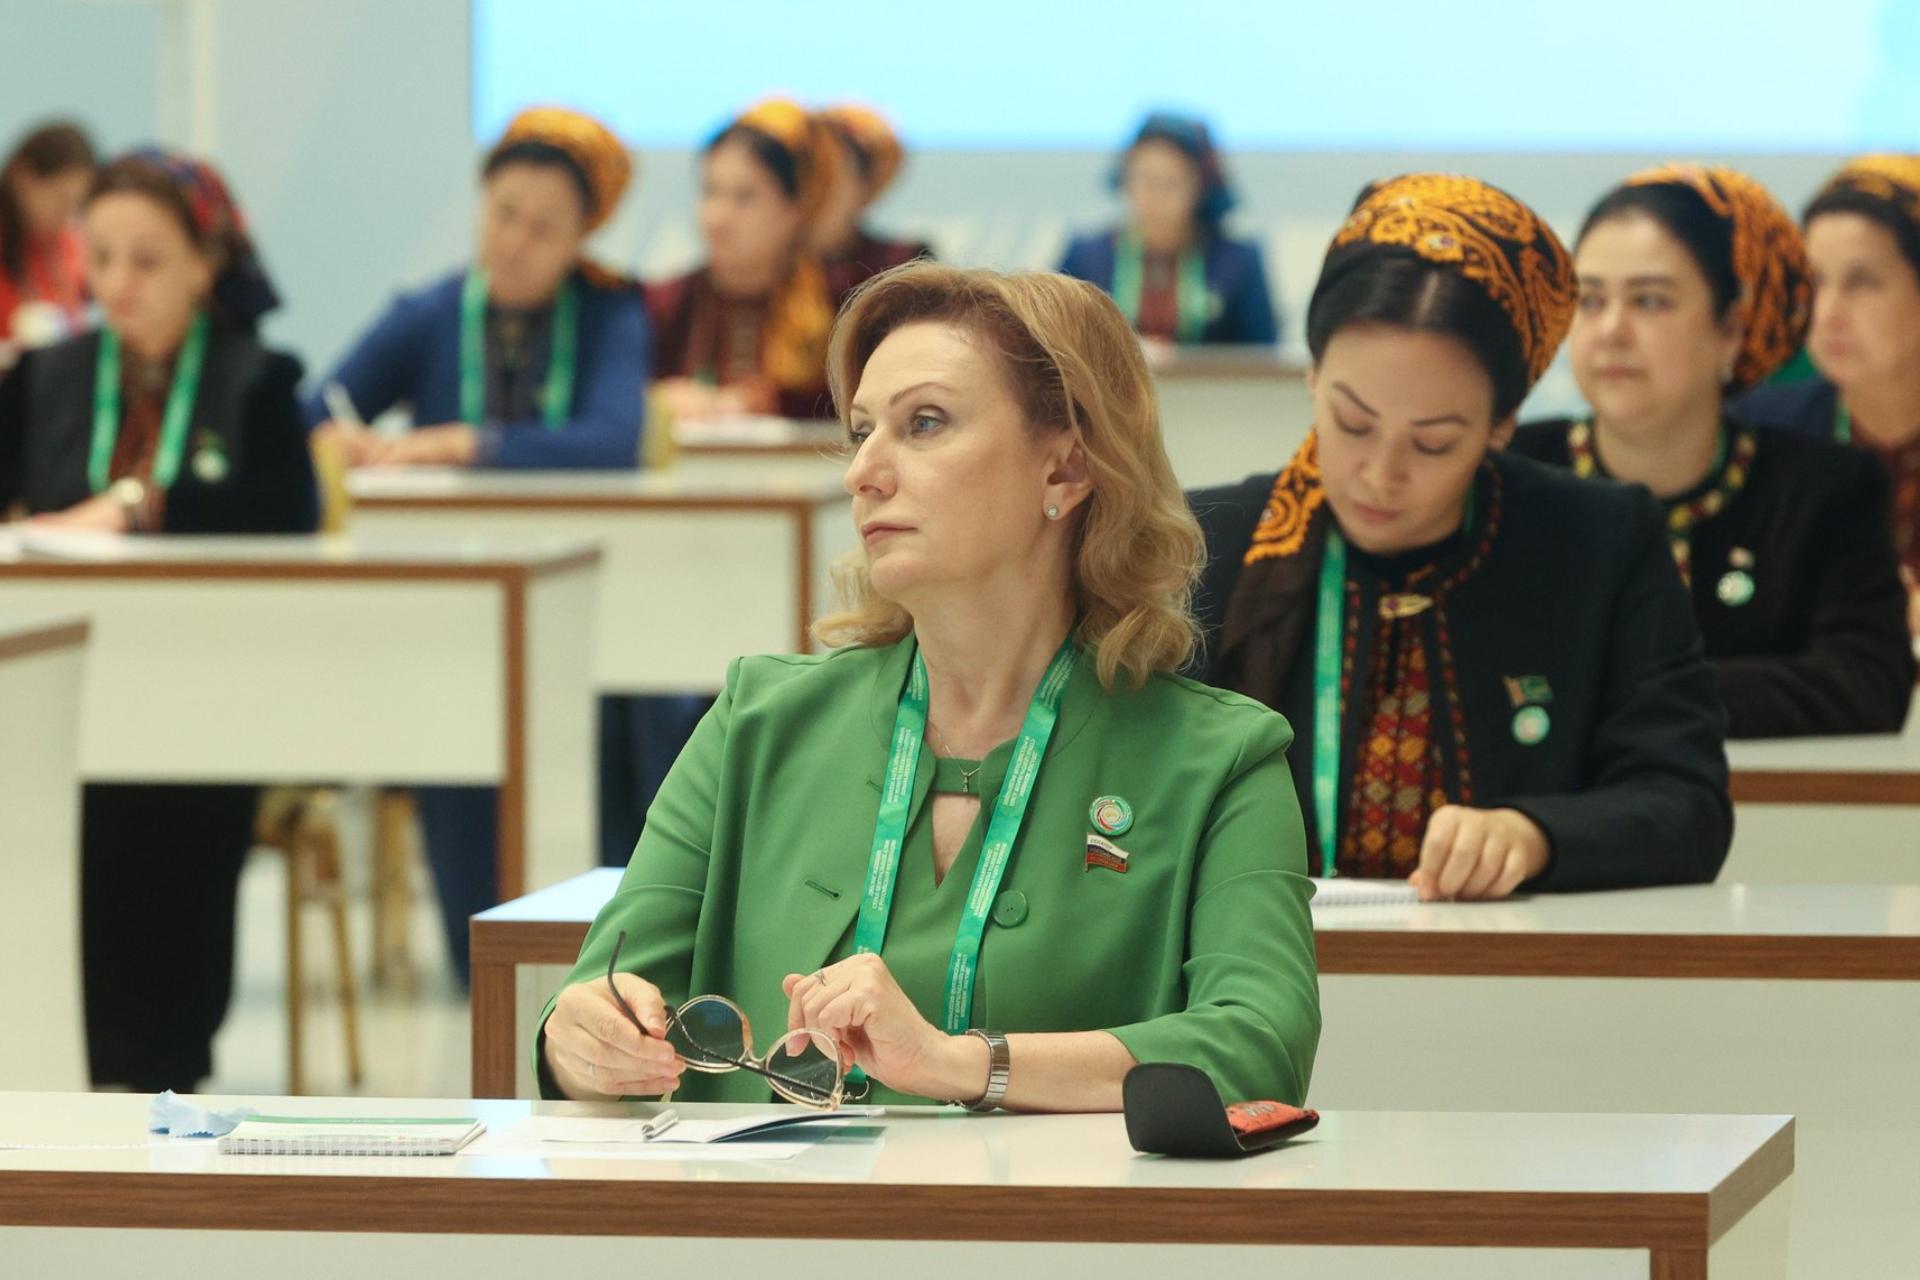 Пленарное заседание первого Диалога женщин стран Центральной Азии и России